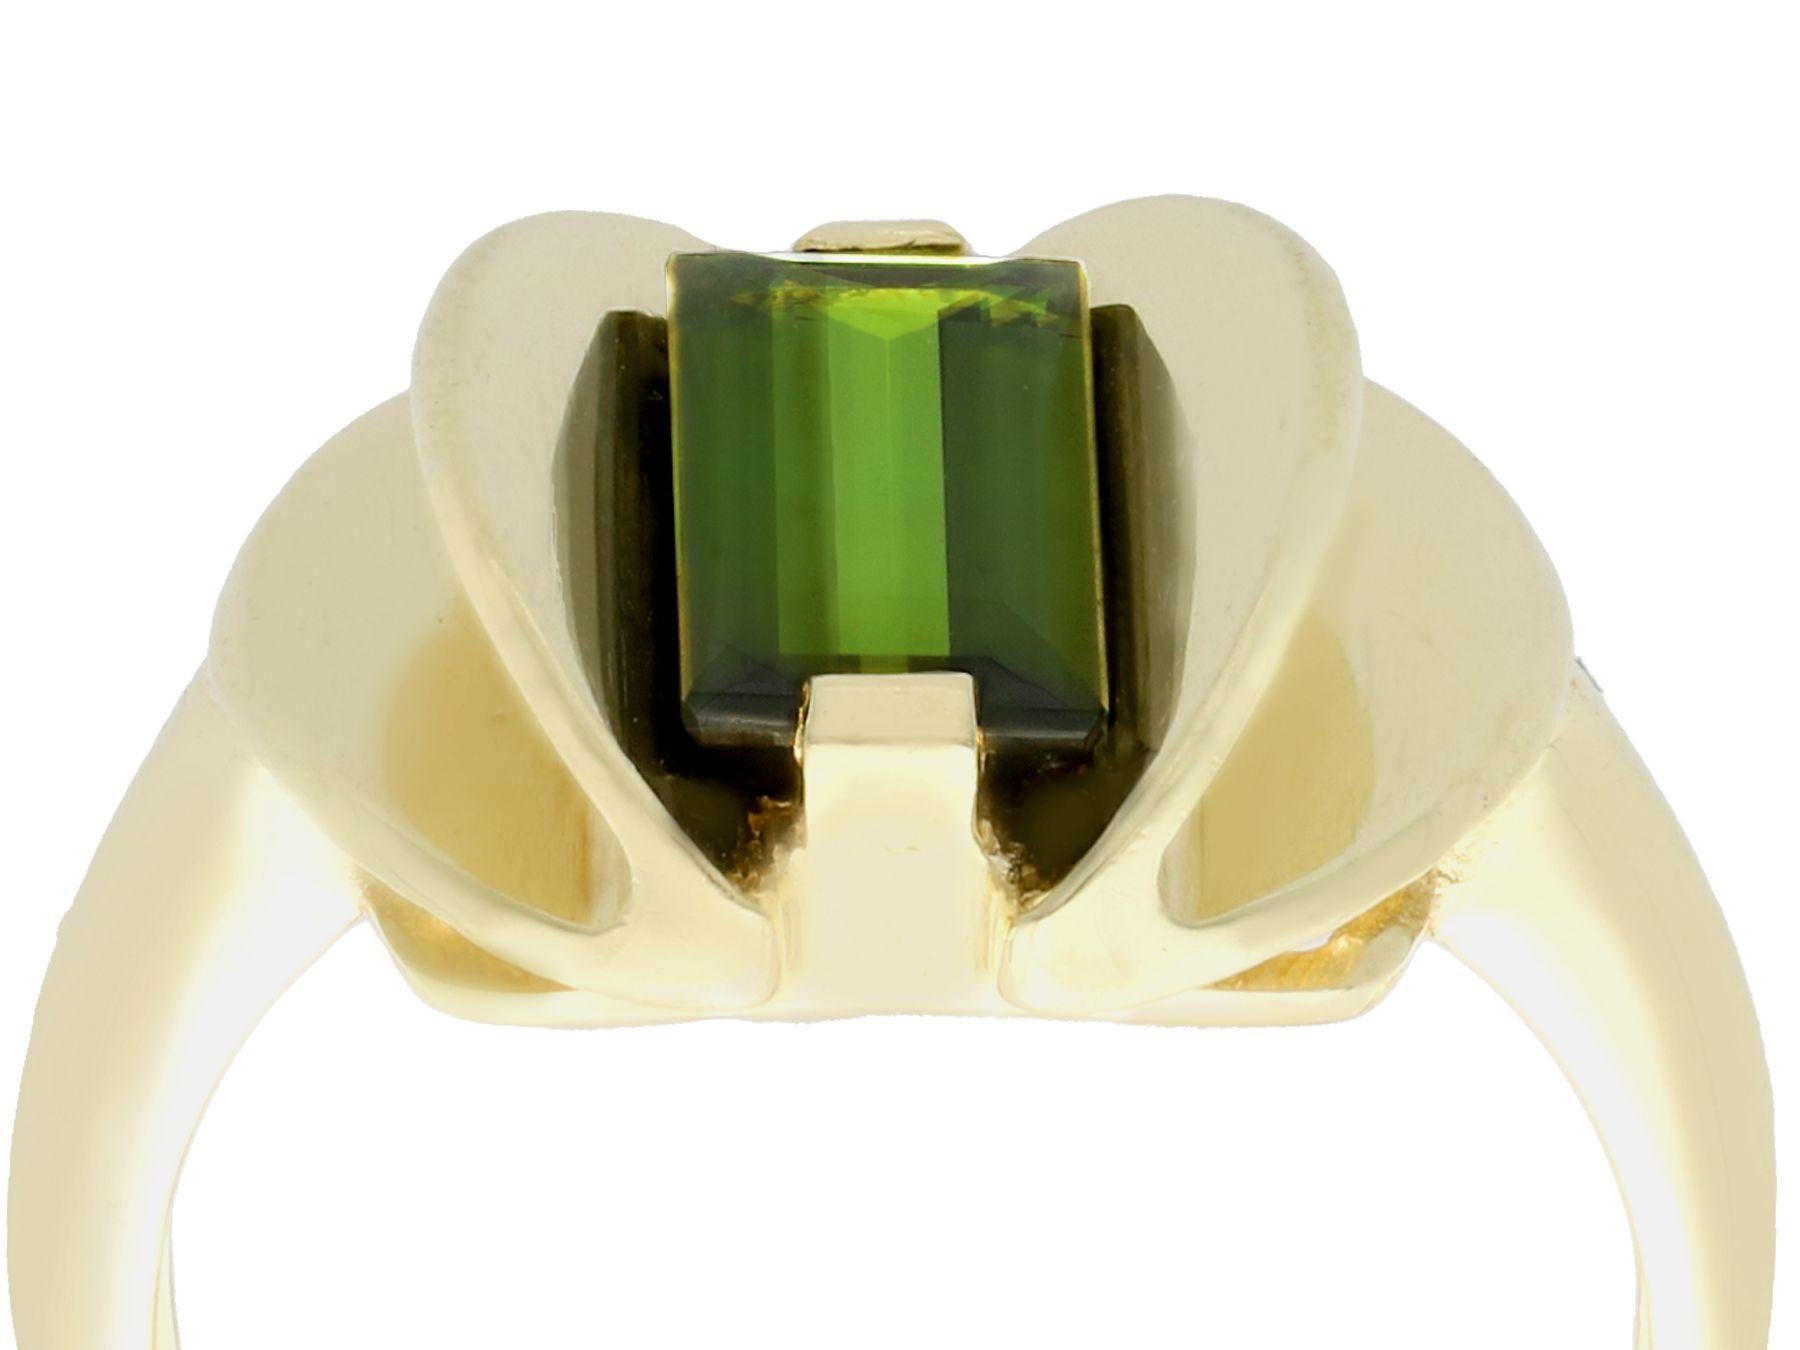 Ein beeindruckender Vintage Art Deco Ring mit 2,05 Karat grünem Turmalin und 14 Karat Gelbgold; Teil unserer vielfältigen Edelsteinschmuck-Kollektionen.

Dieser feine und beeindruckende Vintage-Turmalinring wurde aus 14 Karat Gelbgold